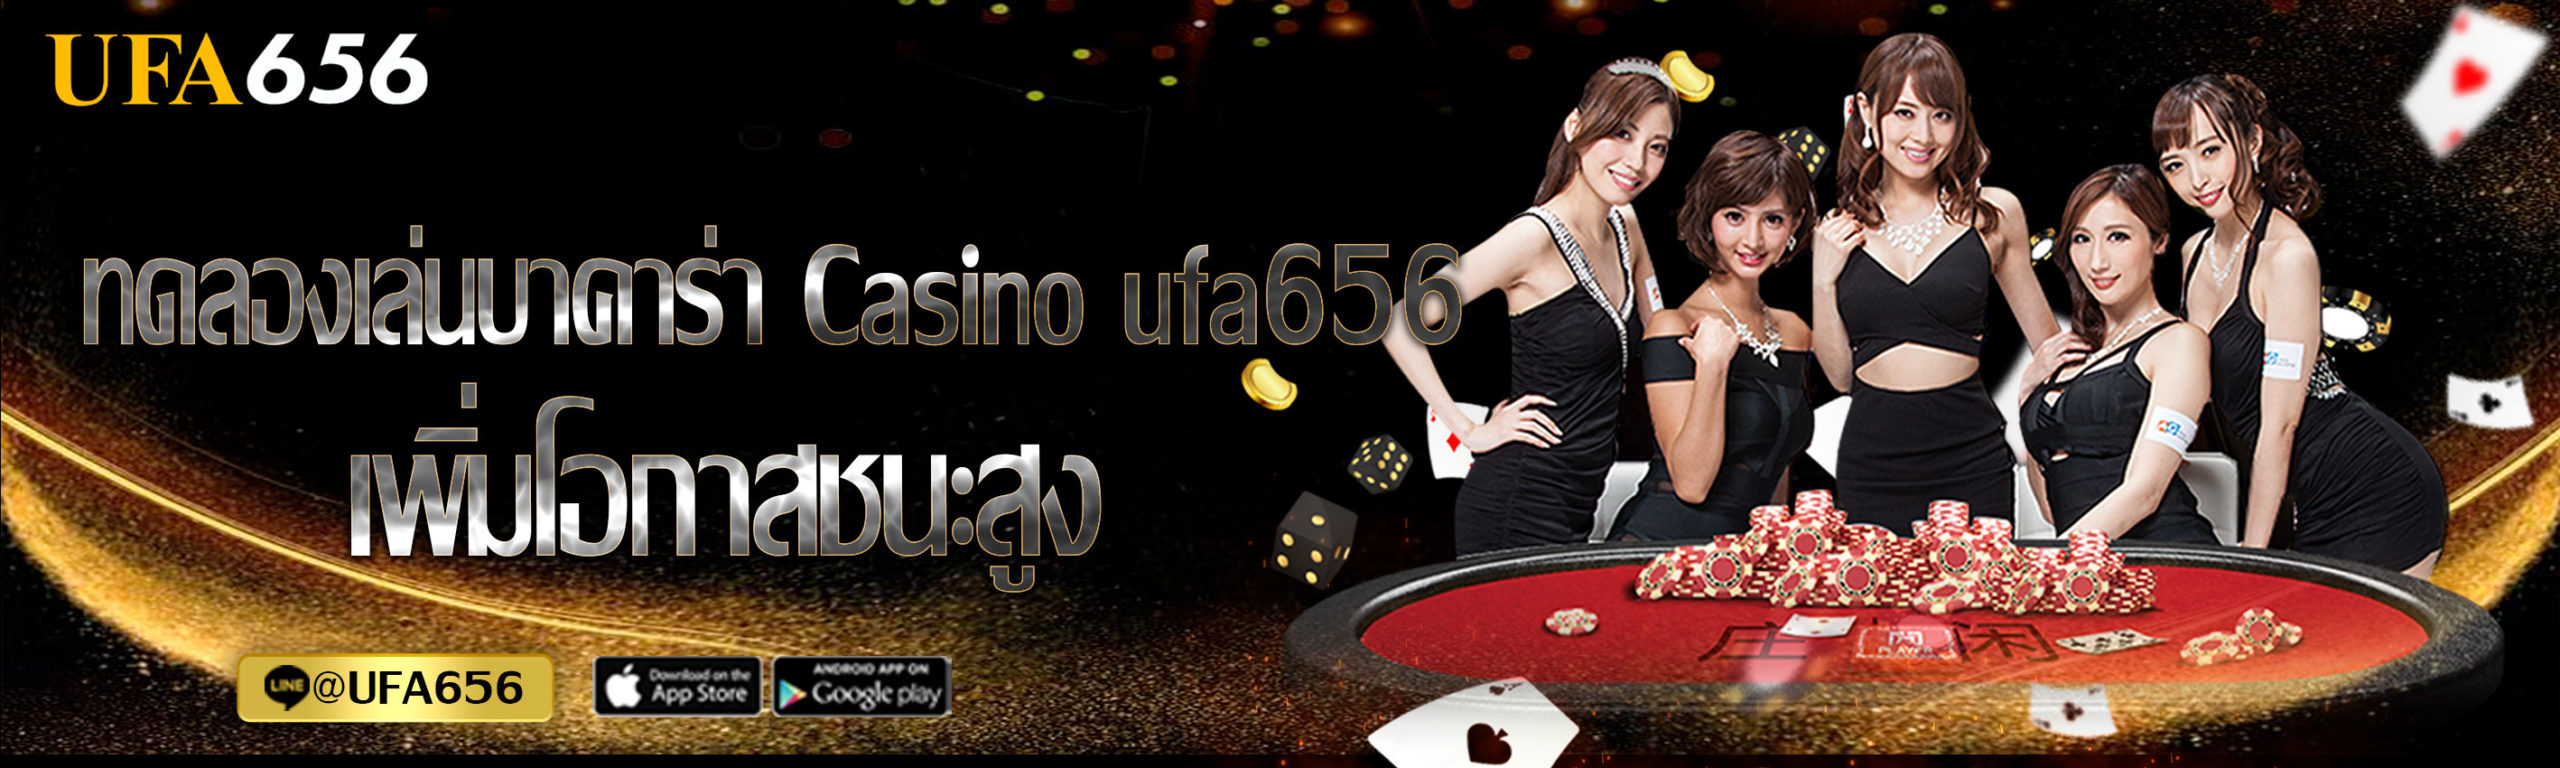 Casino ufa656